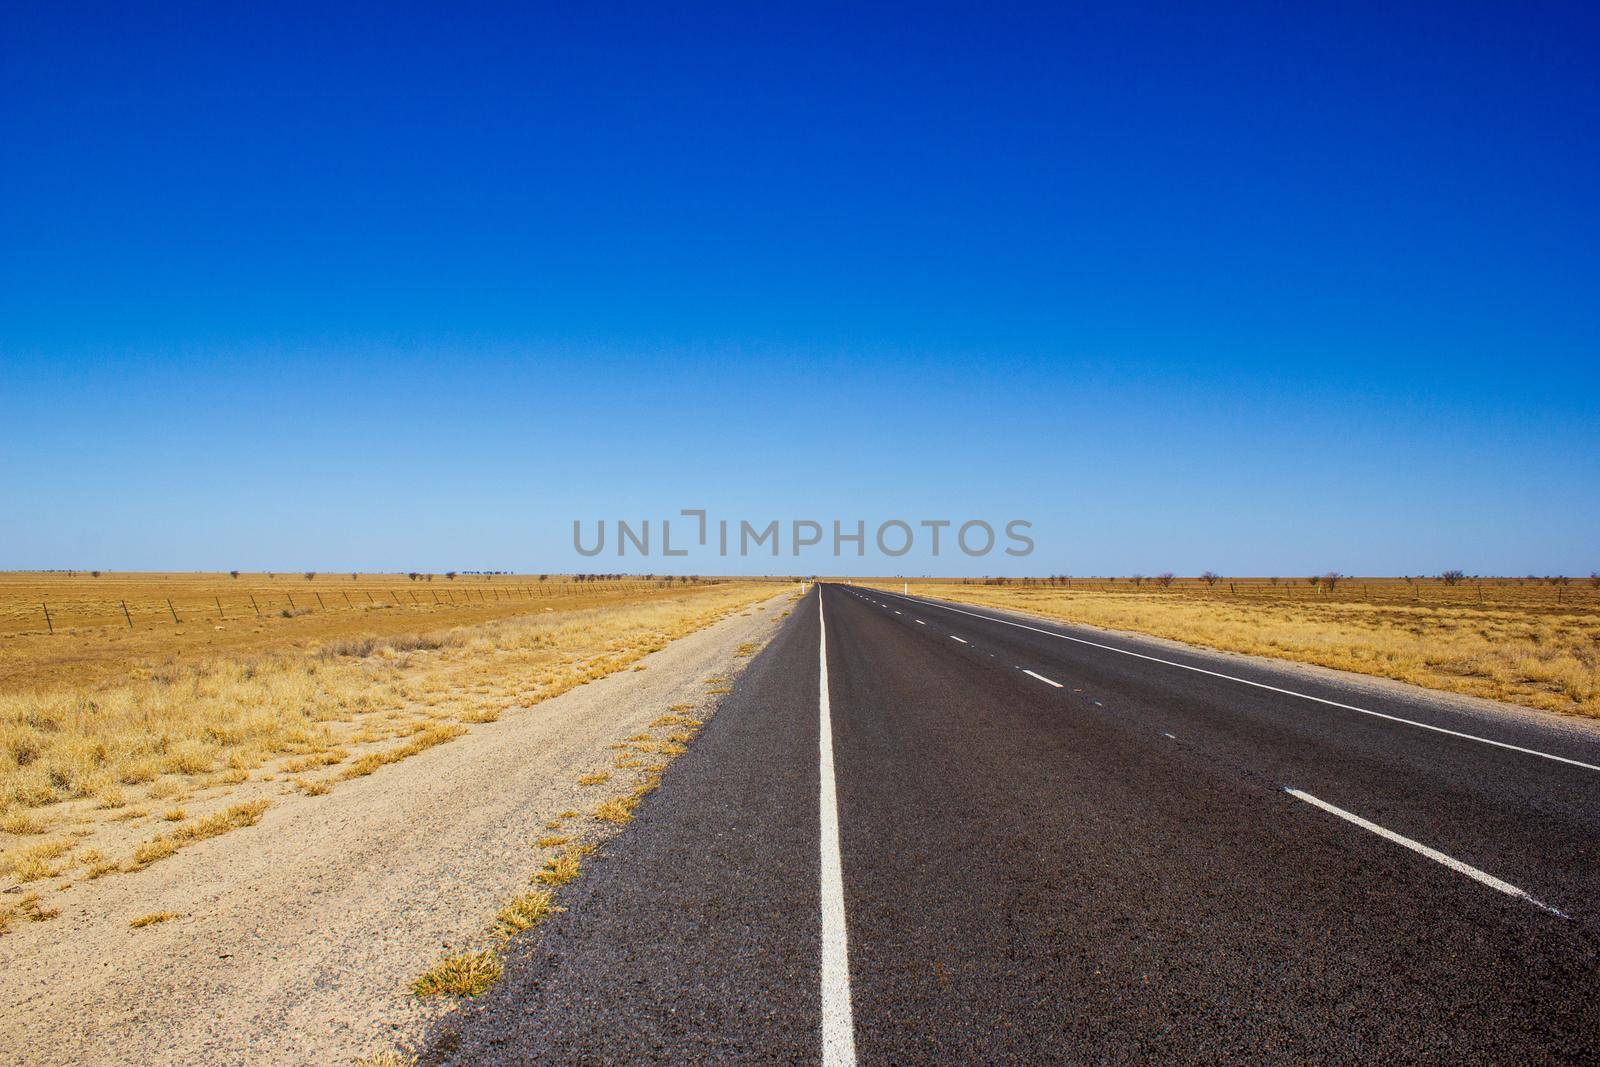 Straße ins Nichts im australischen Outback by bettercallcurry